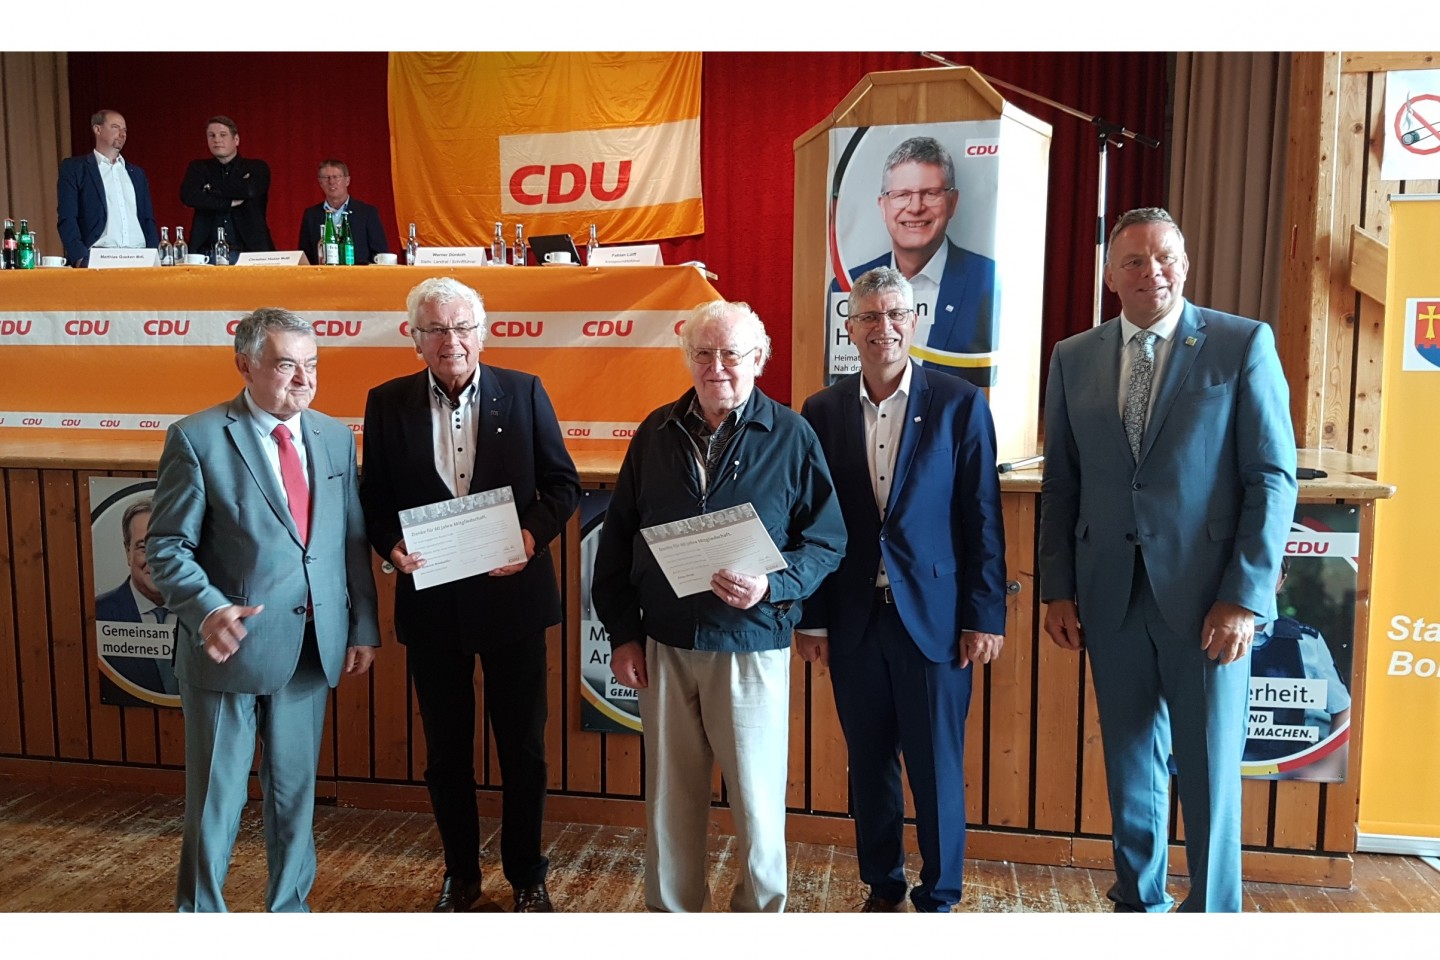 Ehrung für Heinrich Brinkmöller auf dem Kreisparteitag mit Herbert Reul, Franz Drude, Christian Haase und Matthias Goeken